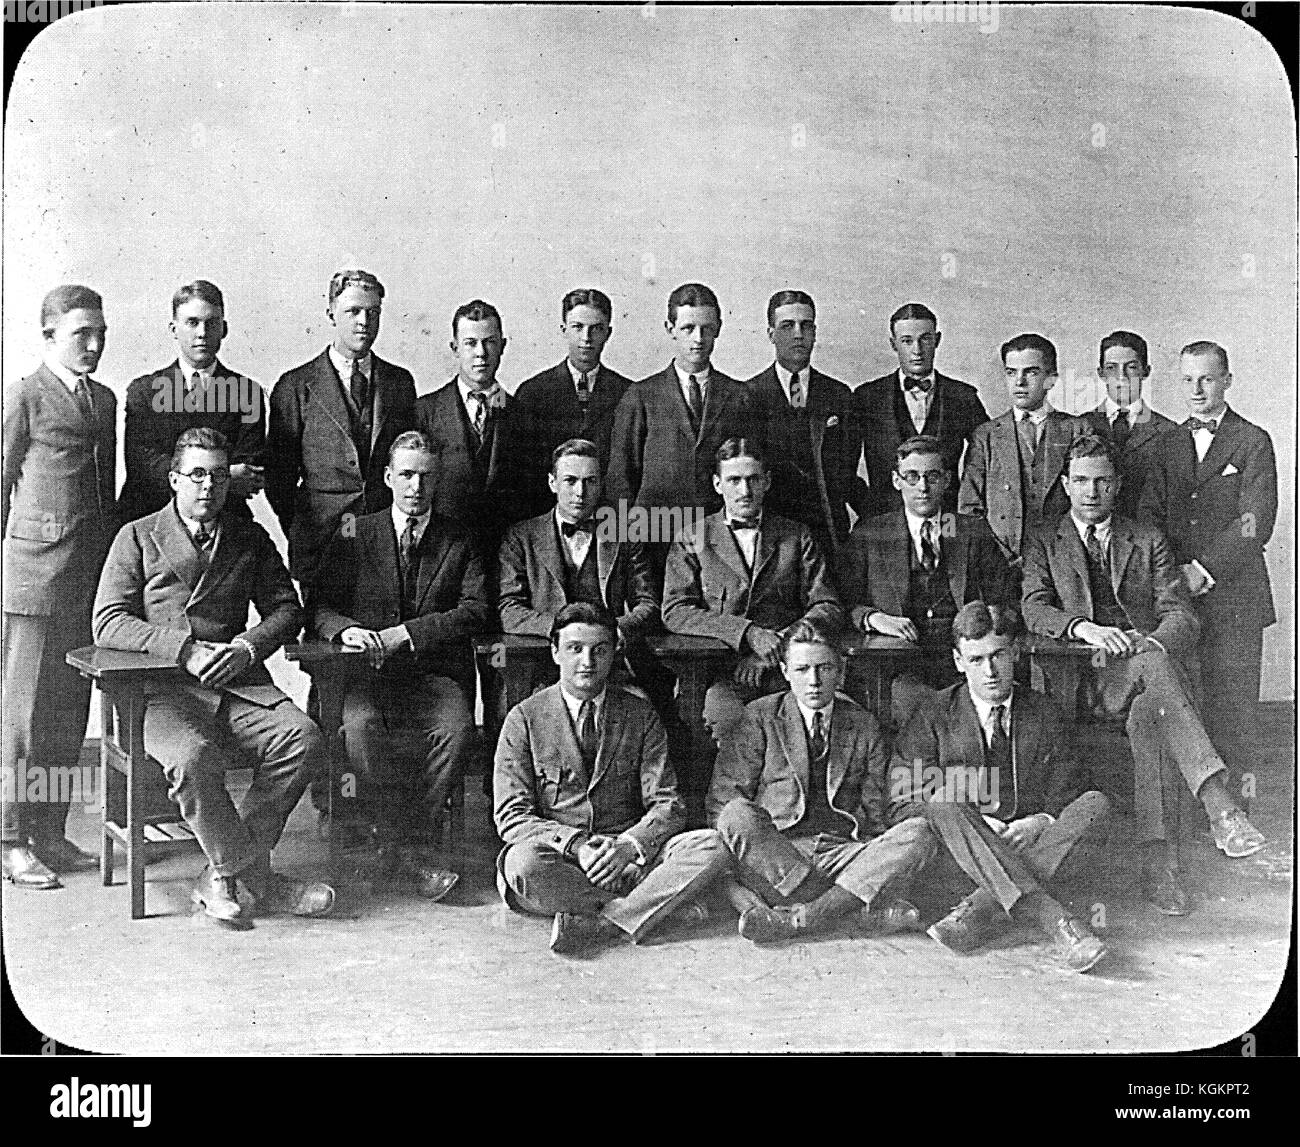 La scheda interfraternity della Johns Hopkins University di Baltimore, Maryland in posa di tre righe per una fotografia di gruppo; trovati nell'università yearbook, confusione, 1922. Foto Stock